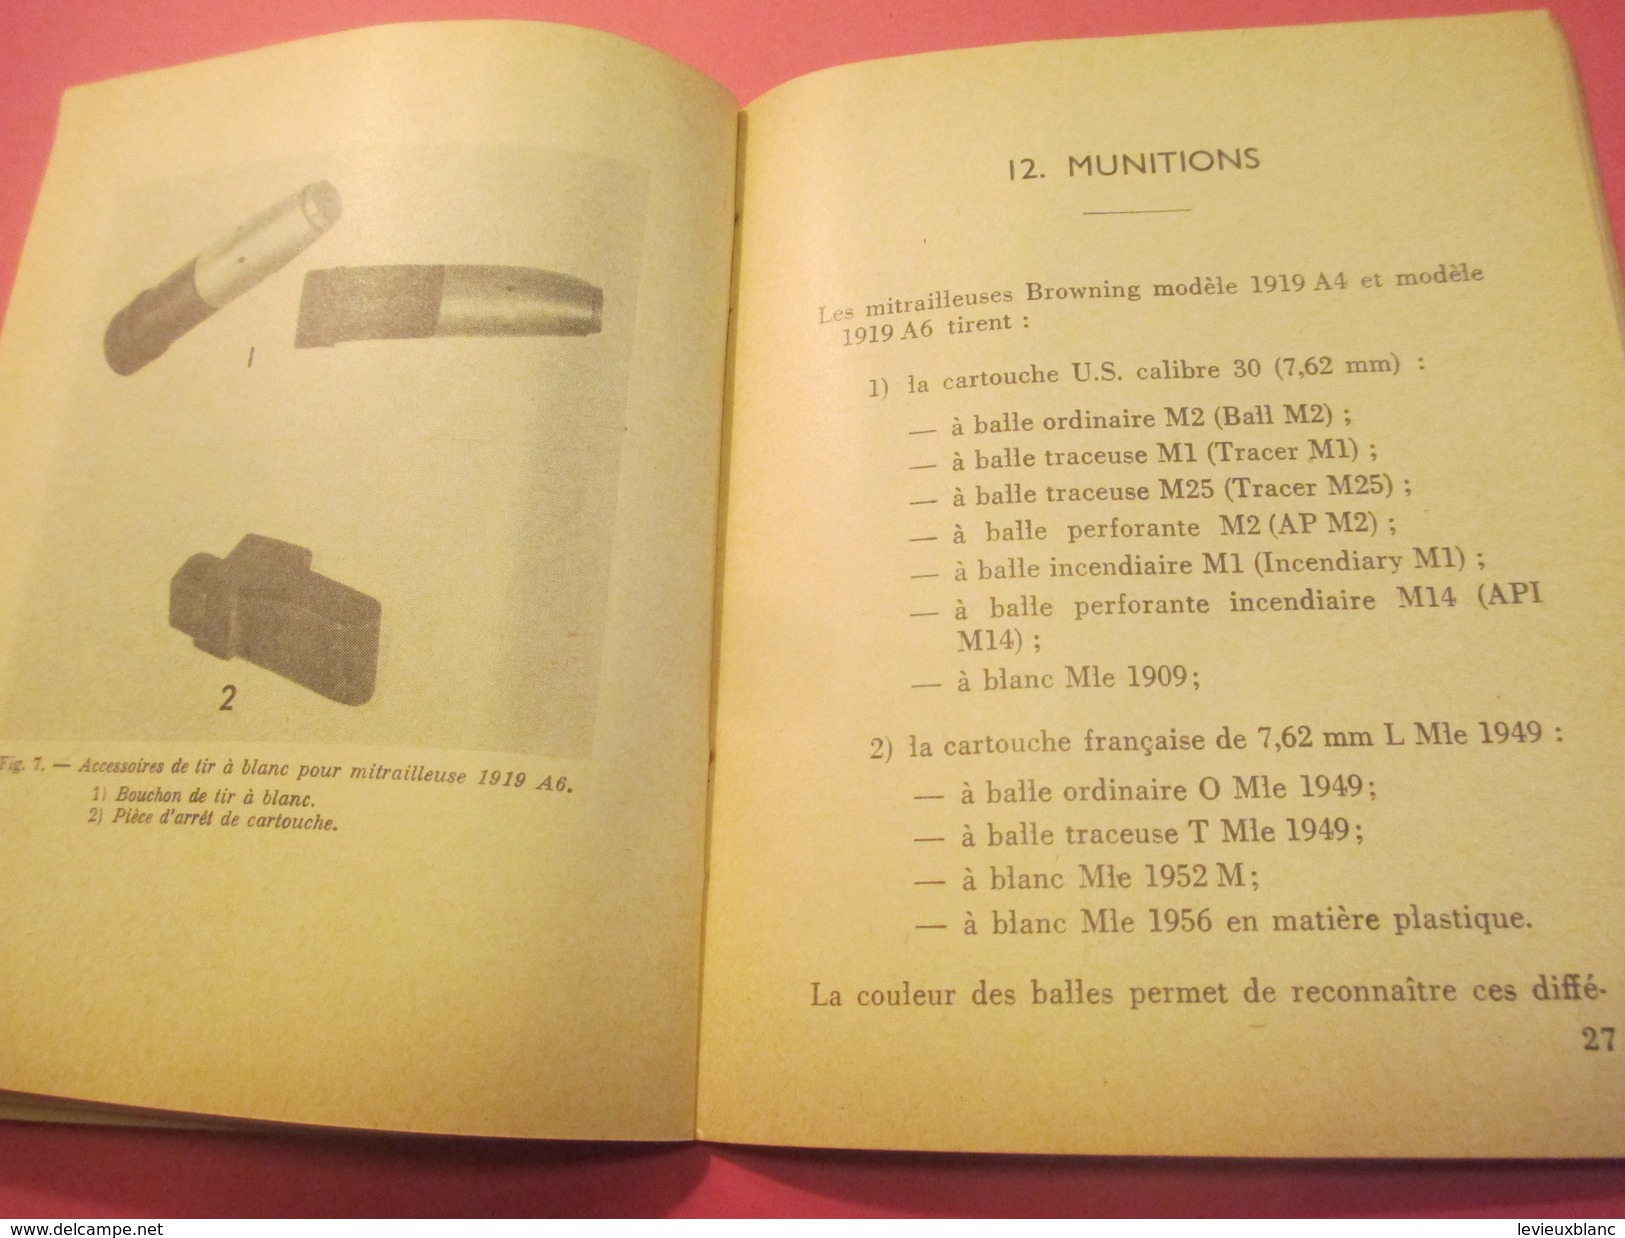 Fascicule/Guide technique sommaire des mitrailleuses  BROWNING US calibre 30/Ministère des Armées /MAT1049/1963   VPN118